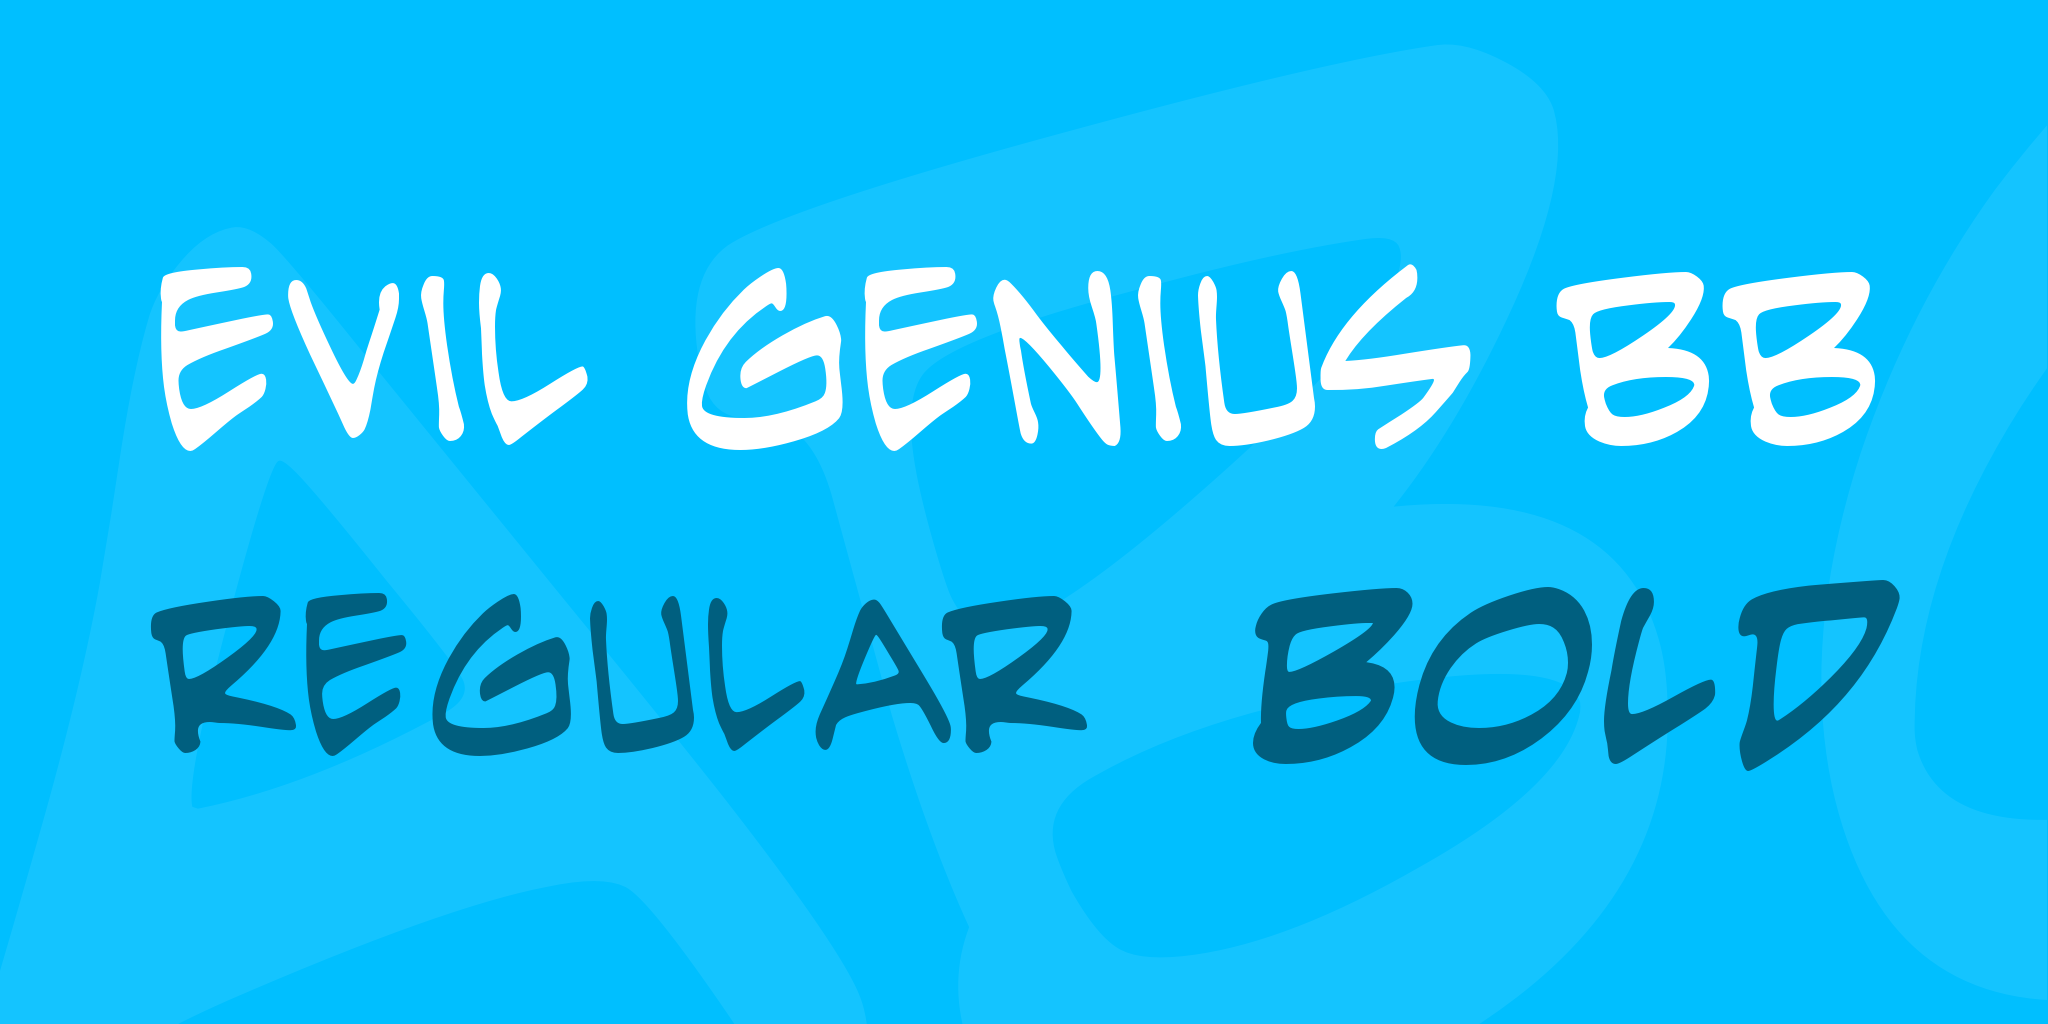 Evil Genius Bb